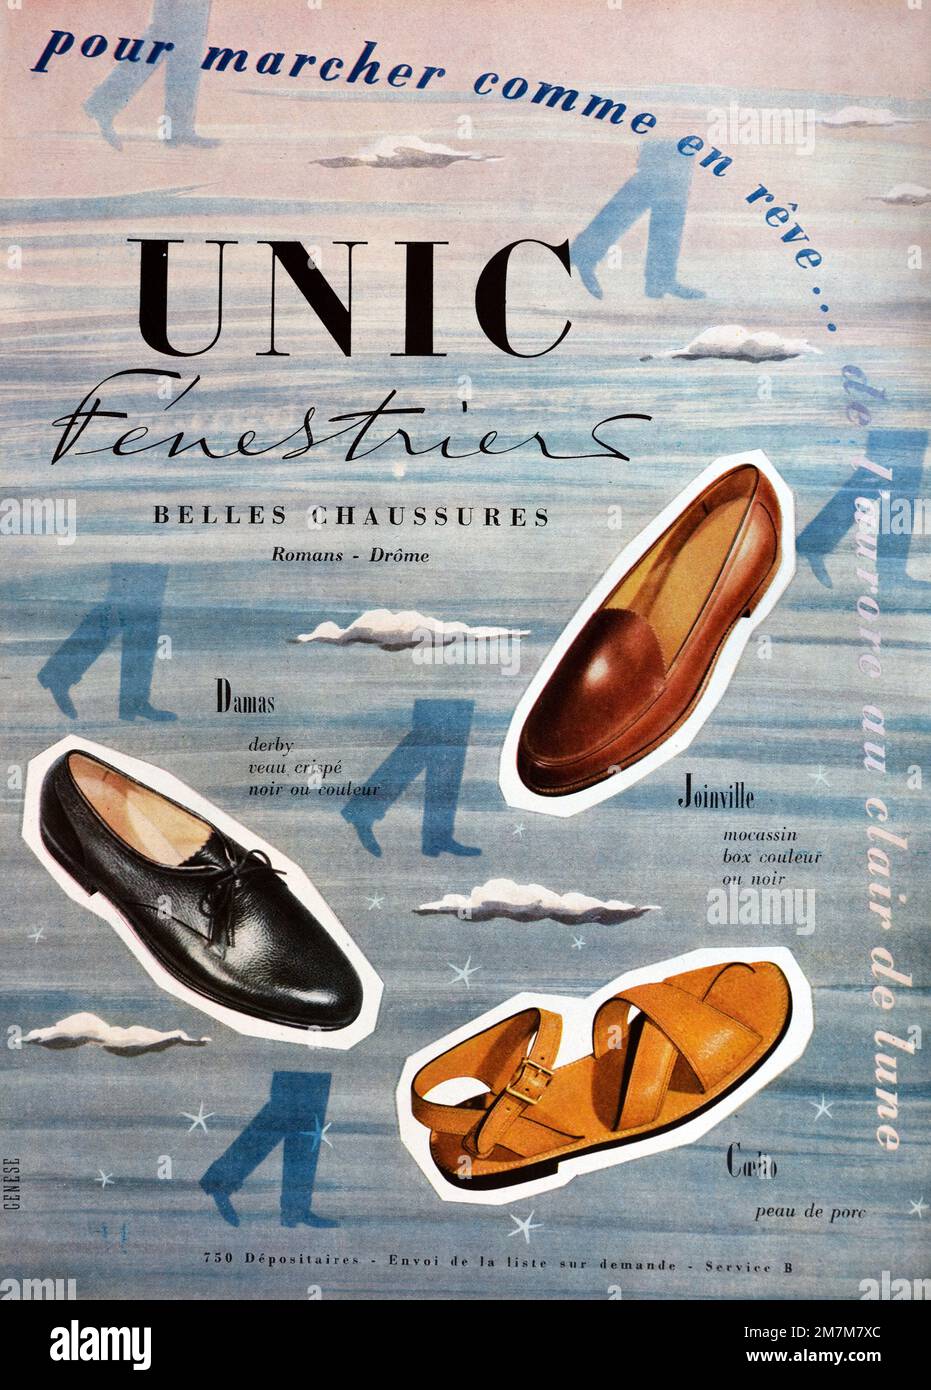 Vintage- oder Alte Werbung, Werbung, Publicity oder Illustration für 1950er Herrenschuhe oder Unic Shoes Werbung 1956 Stockfoto